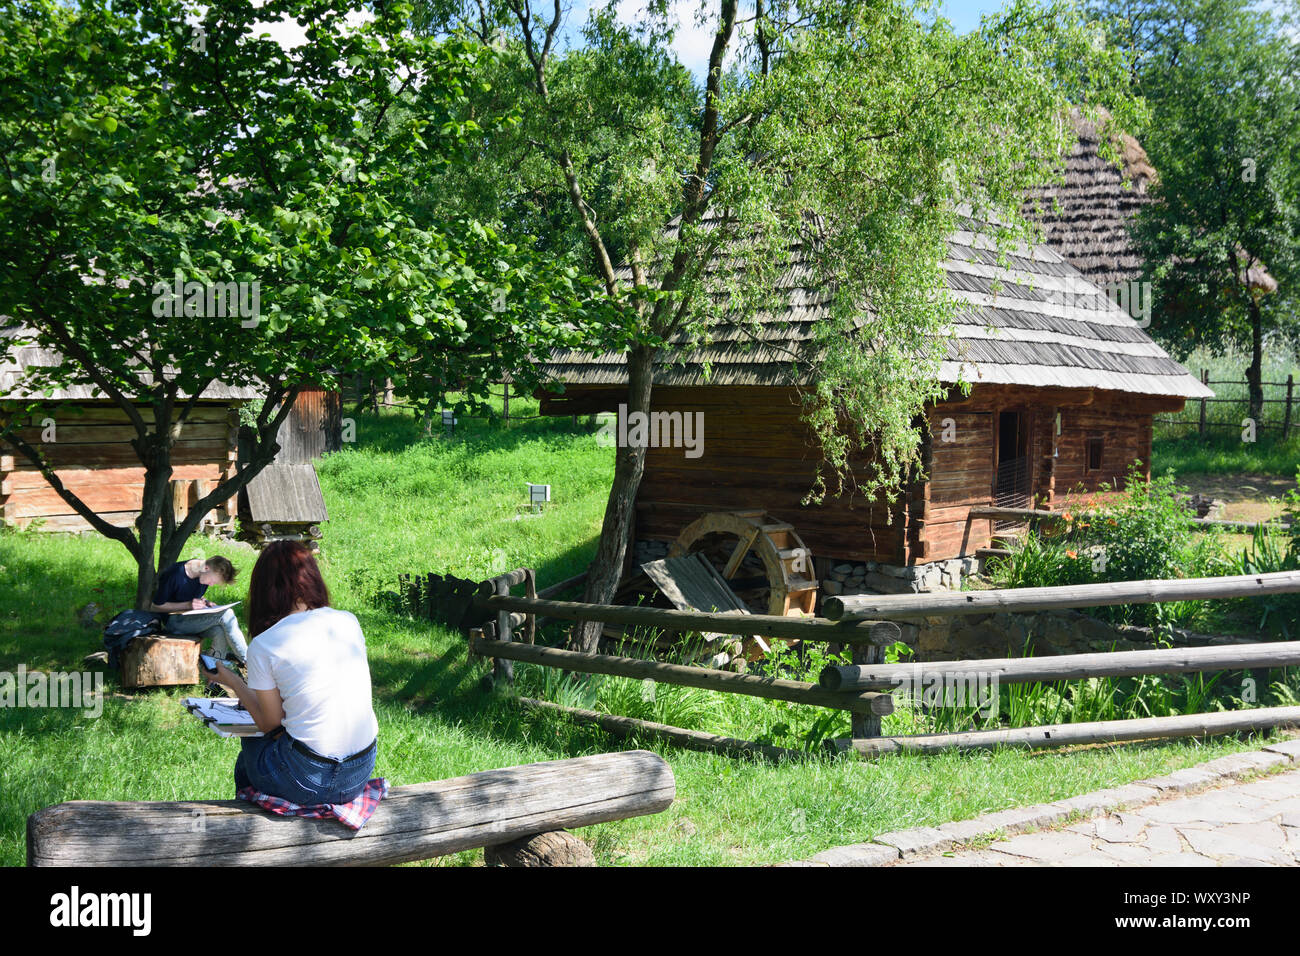 Ushgorod, Ungwar: Museum der Volksarchitektur und Leben, traditionellen Haus aus den Dörfern im gesamten Gebiet (Karpaten), Transkarpatien Stockfoto